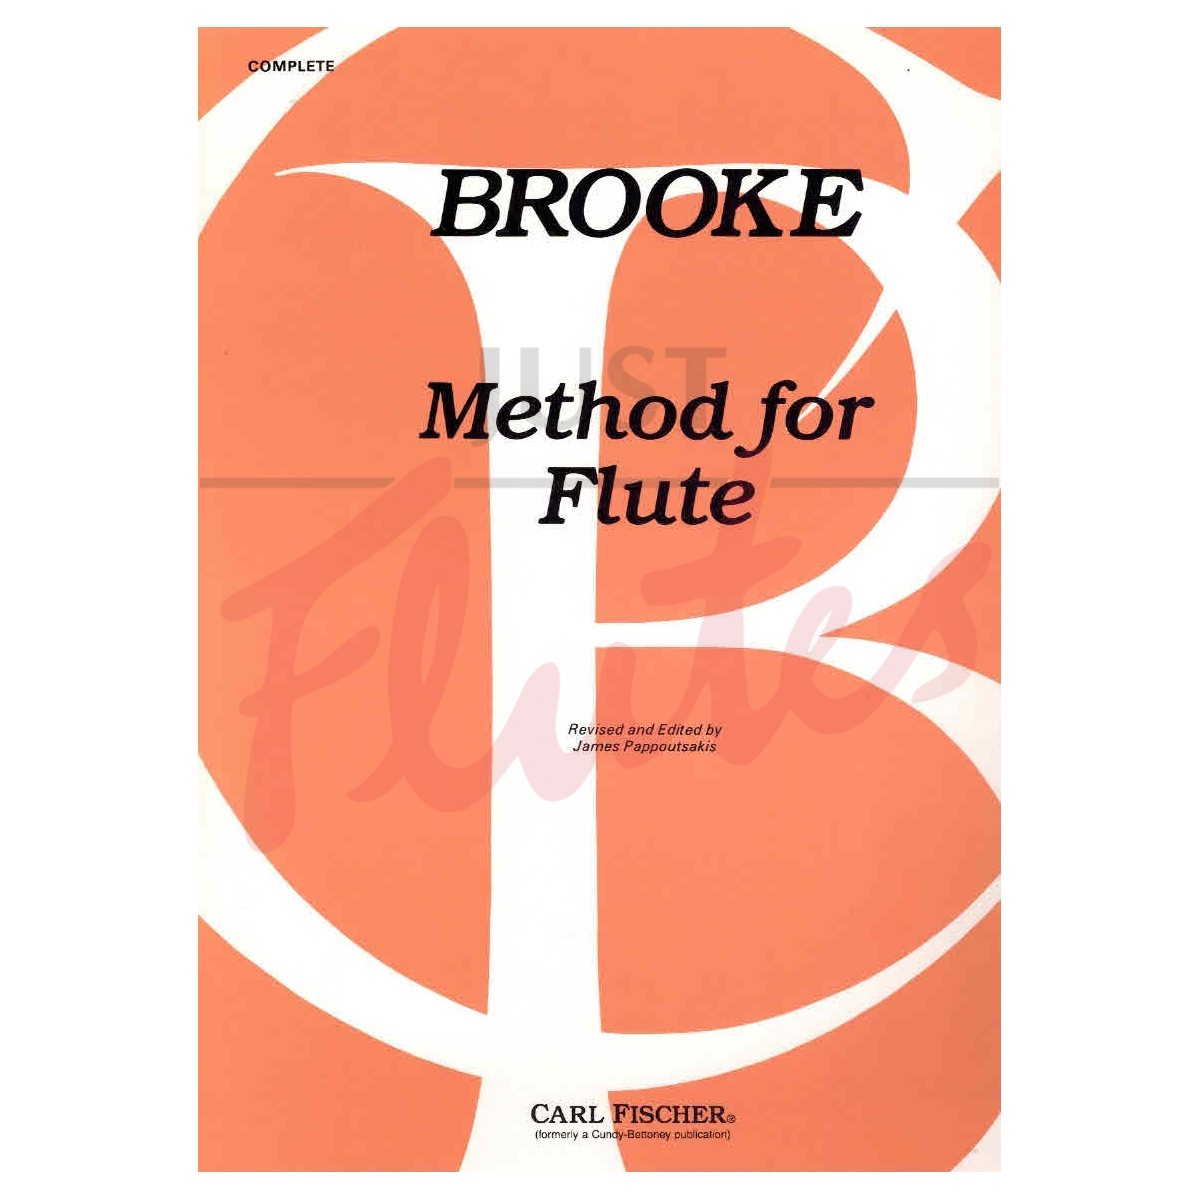 Method for Flute